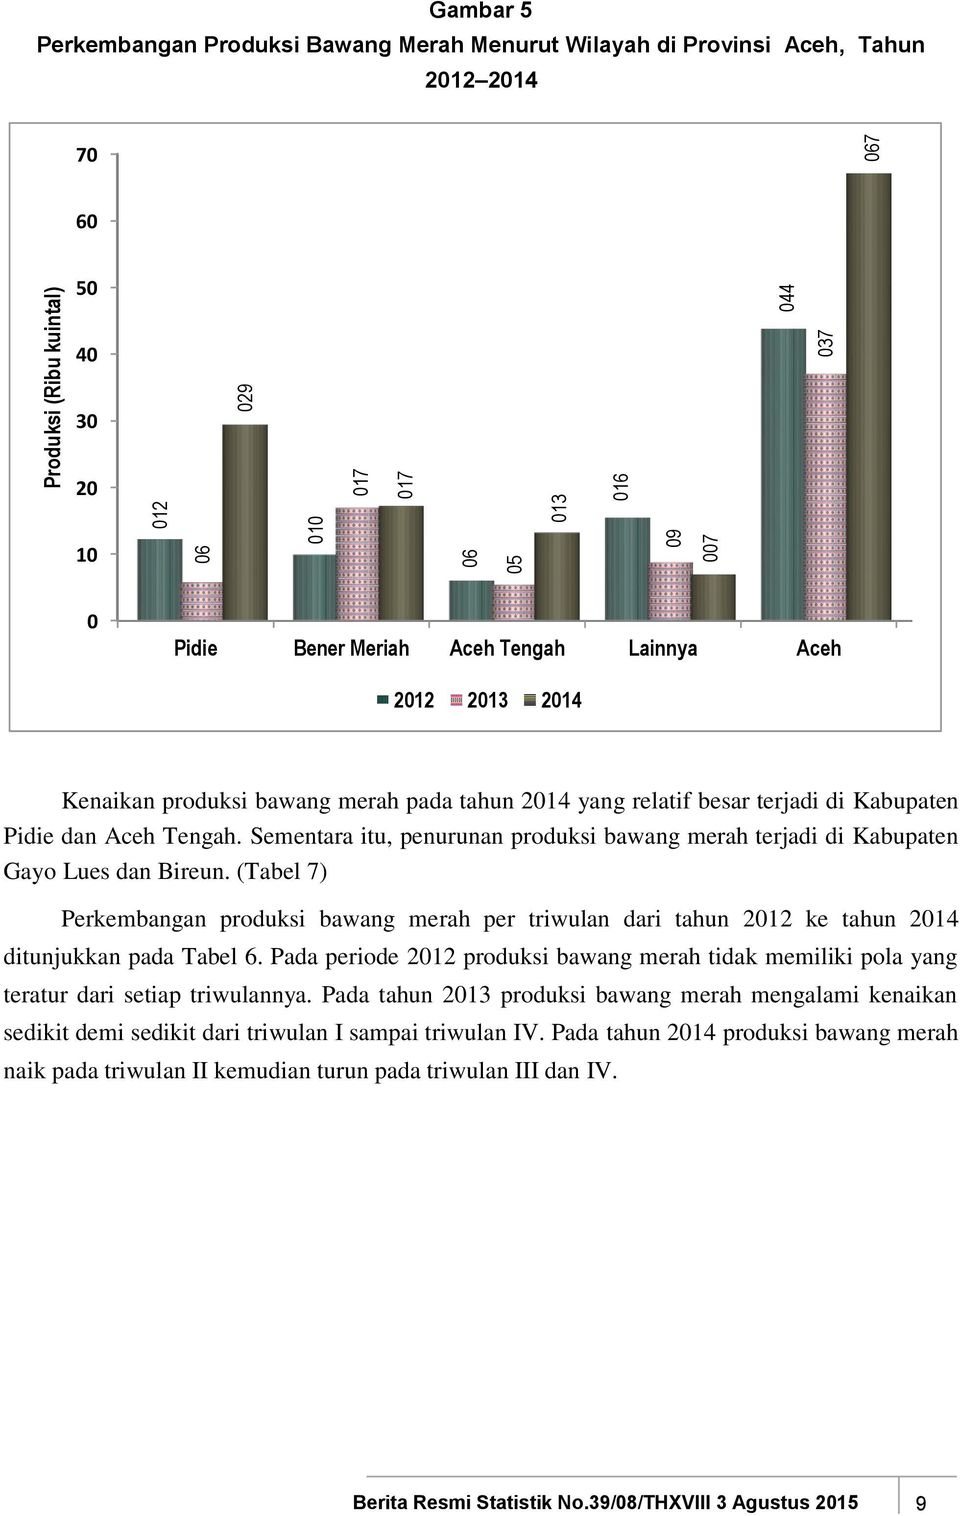 Sementara itu, penurunan produksi bawang merah terjadi di Kabupaten Gayo Lues dan Bireun. (Tabel 7) produksi bawang merah per triwulan dari tahun 2012 ke tahun 2014 ditunjukkan pada Tabel 6.